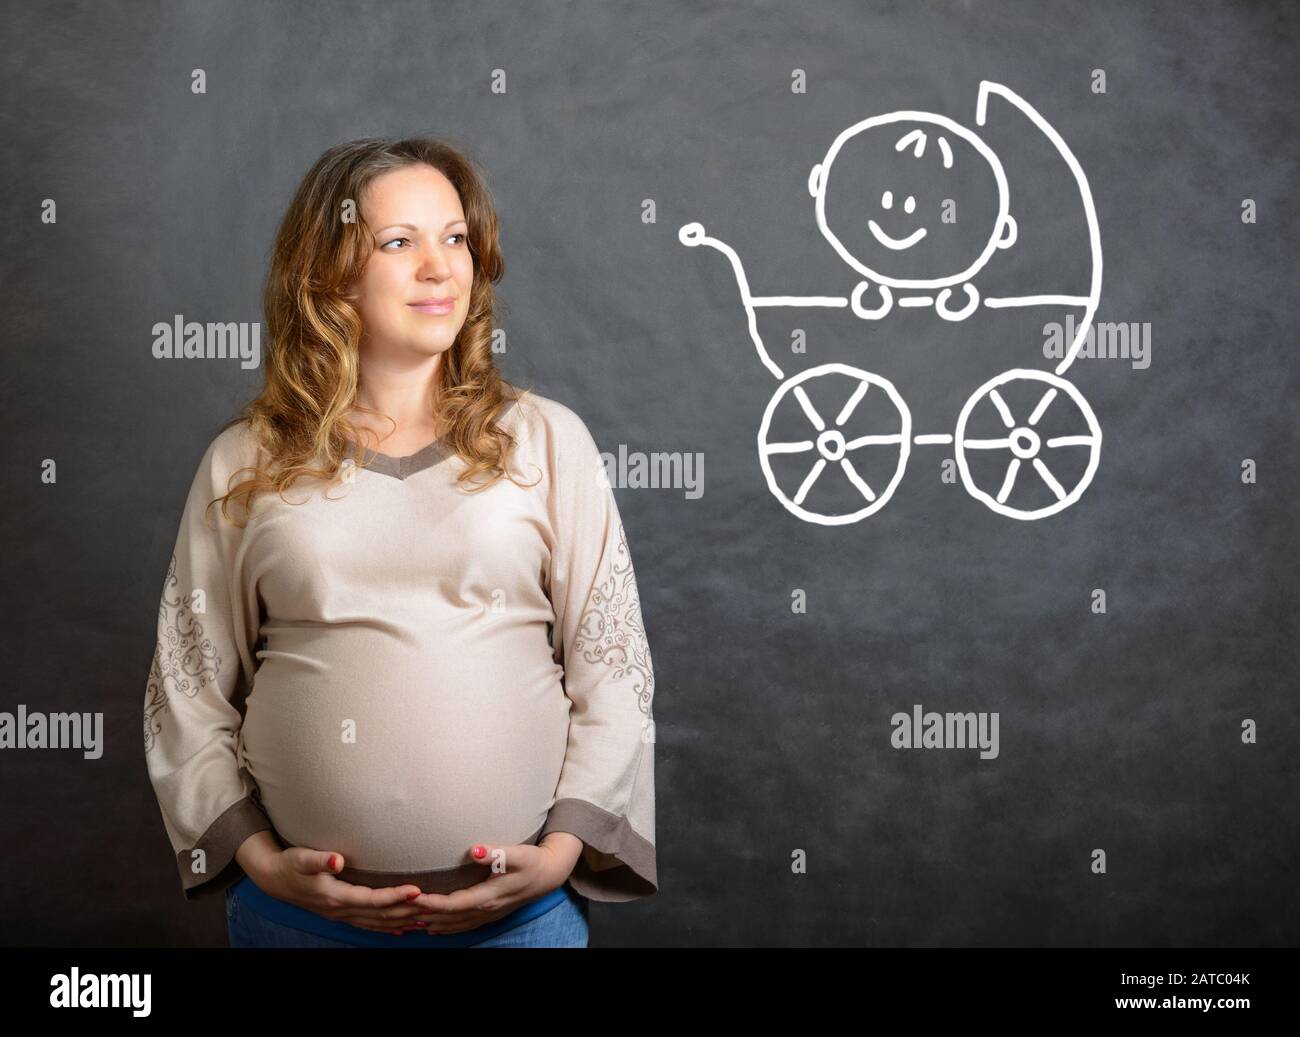 Schwangere stellt sich ein zukünftiges Kind im Kinderwagen vor Stockfoto